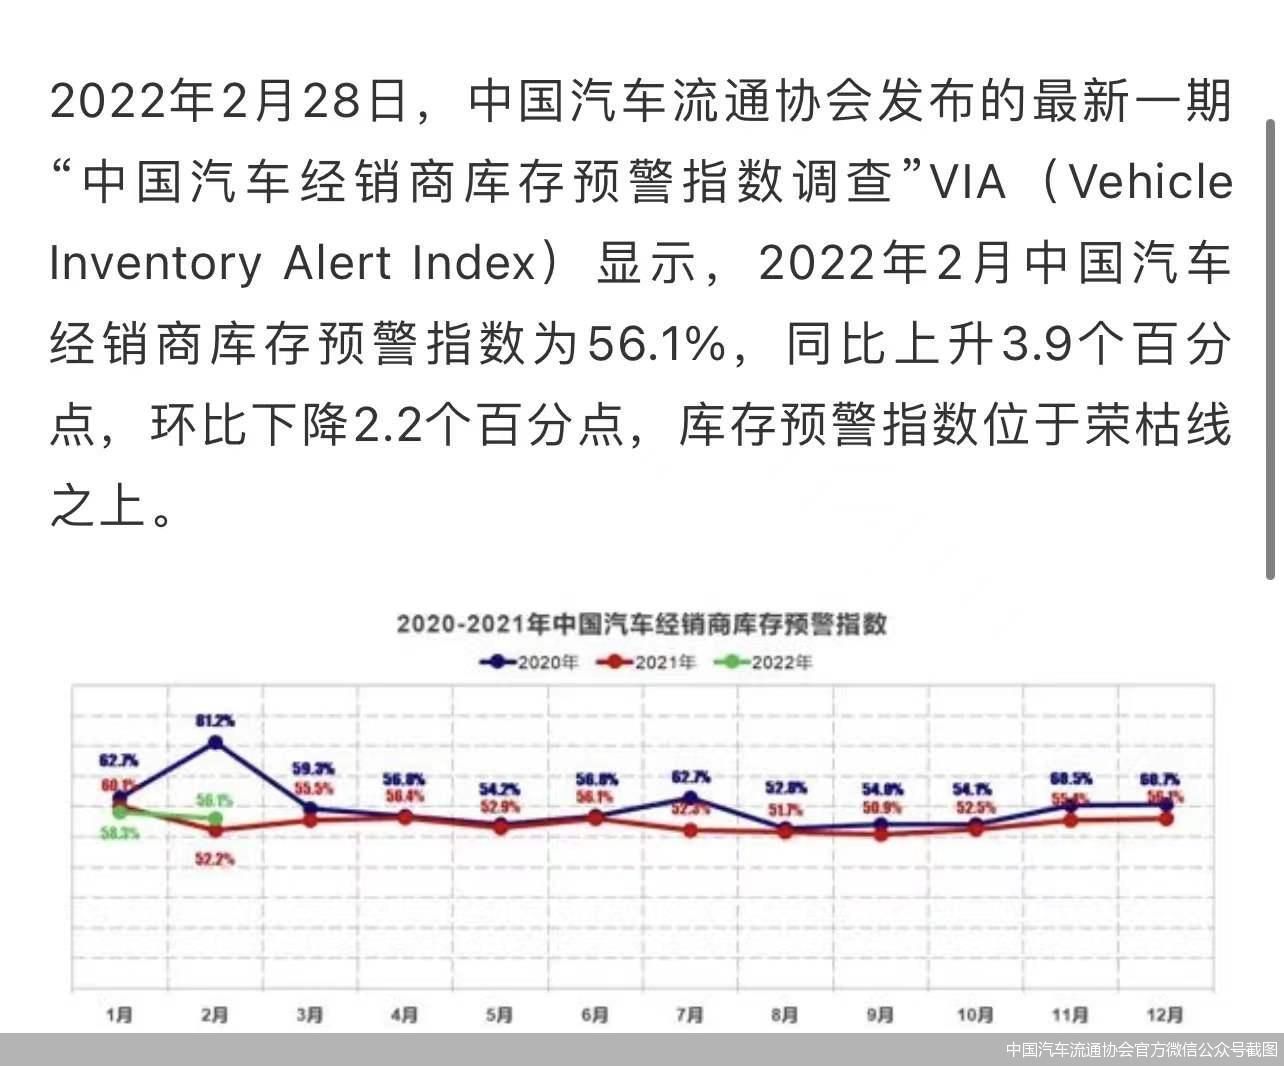 2月中国汽车经销商库存预警指数为56.1%